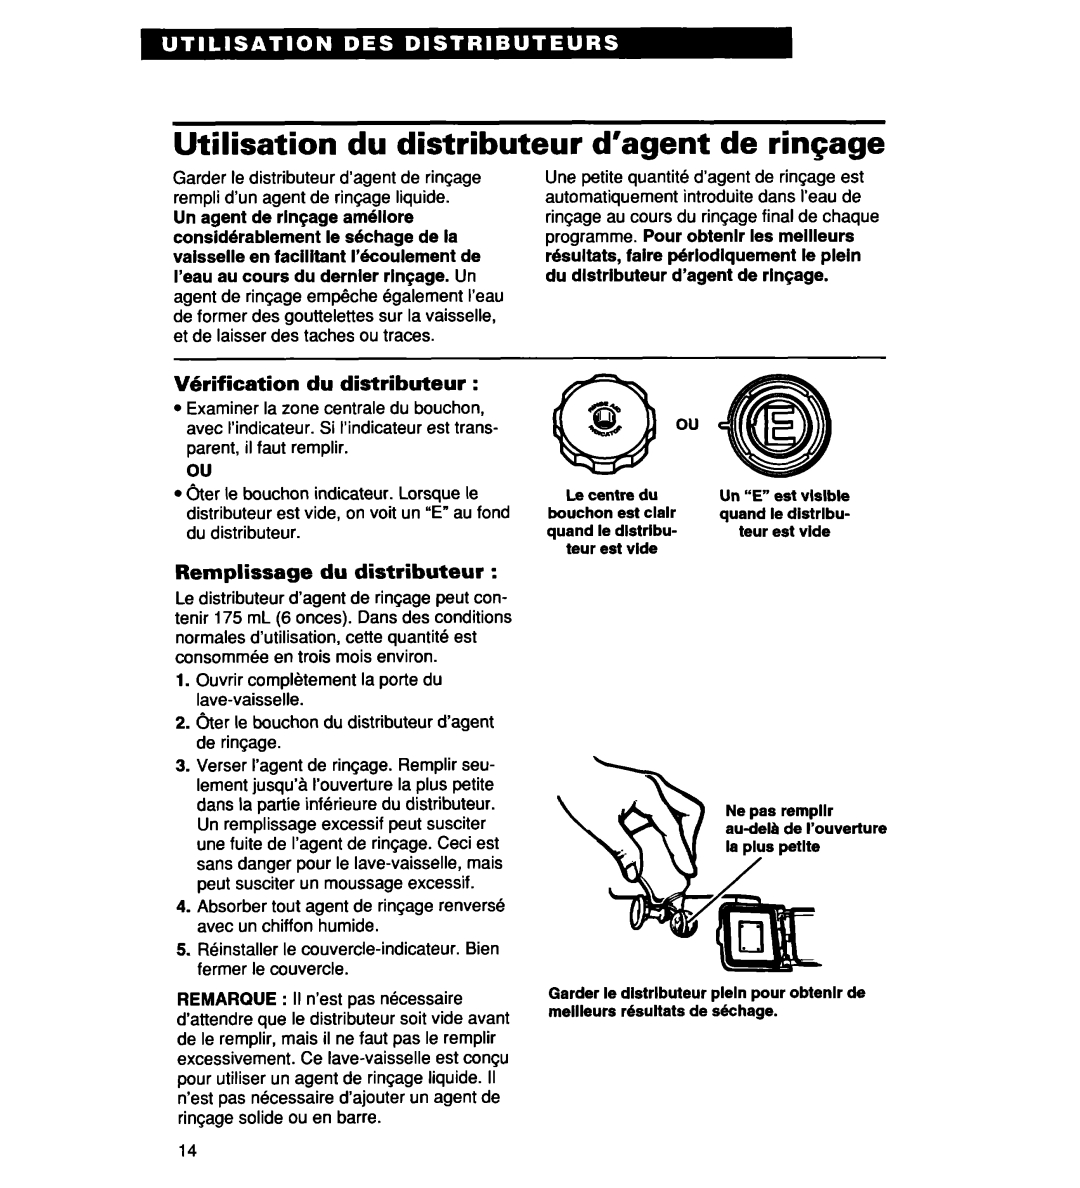 Whirlpool 930 Series, 935 Series, 927 Series Utilisation du distributeur d’agent de rinGage, Wrification du distributeur 